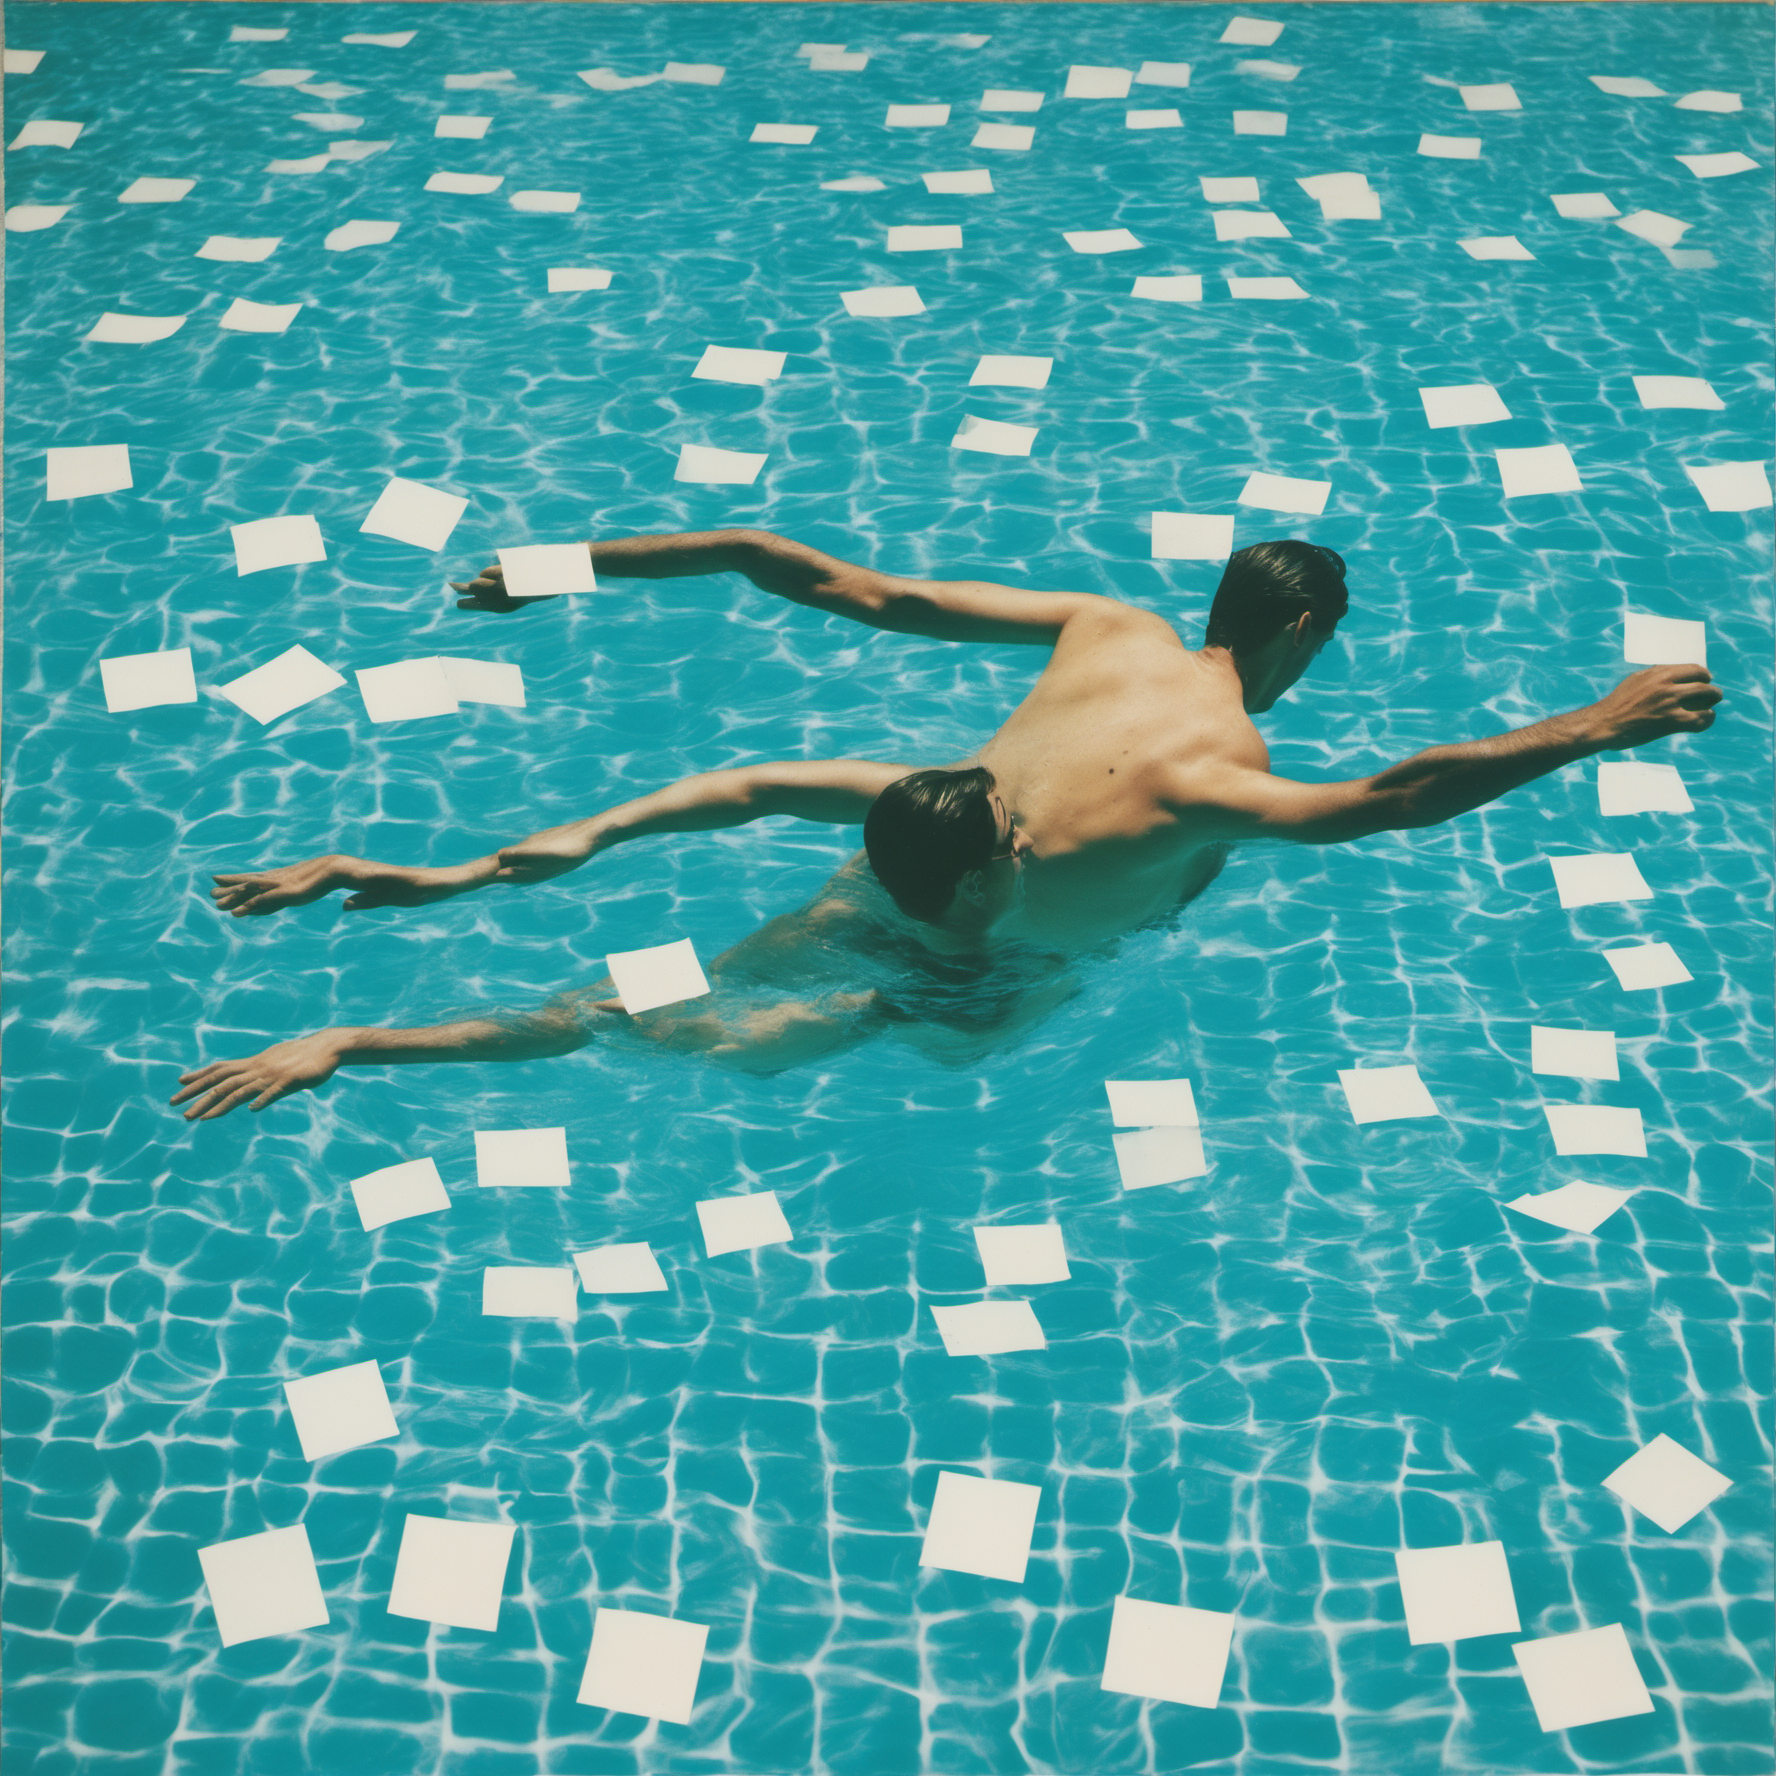 [david hockney] fotografie wie bild, collage aus vielen quadratischen polaroid-fotografien, mann schwimmend in swimming pool, blaues wasser, mittelformat, asa 50, blende 32